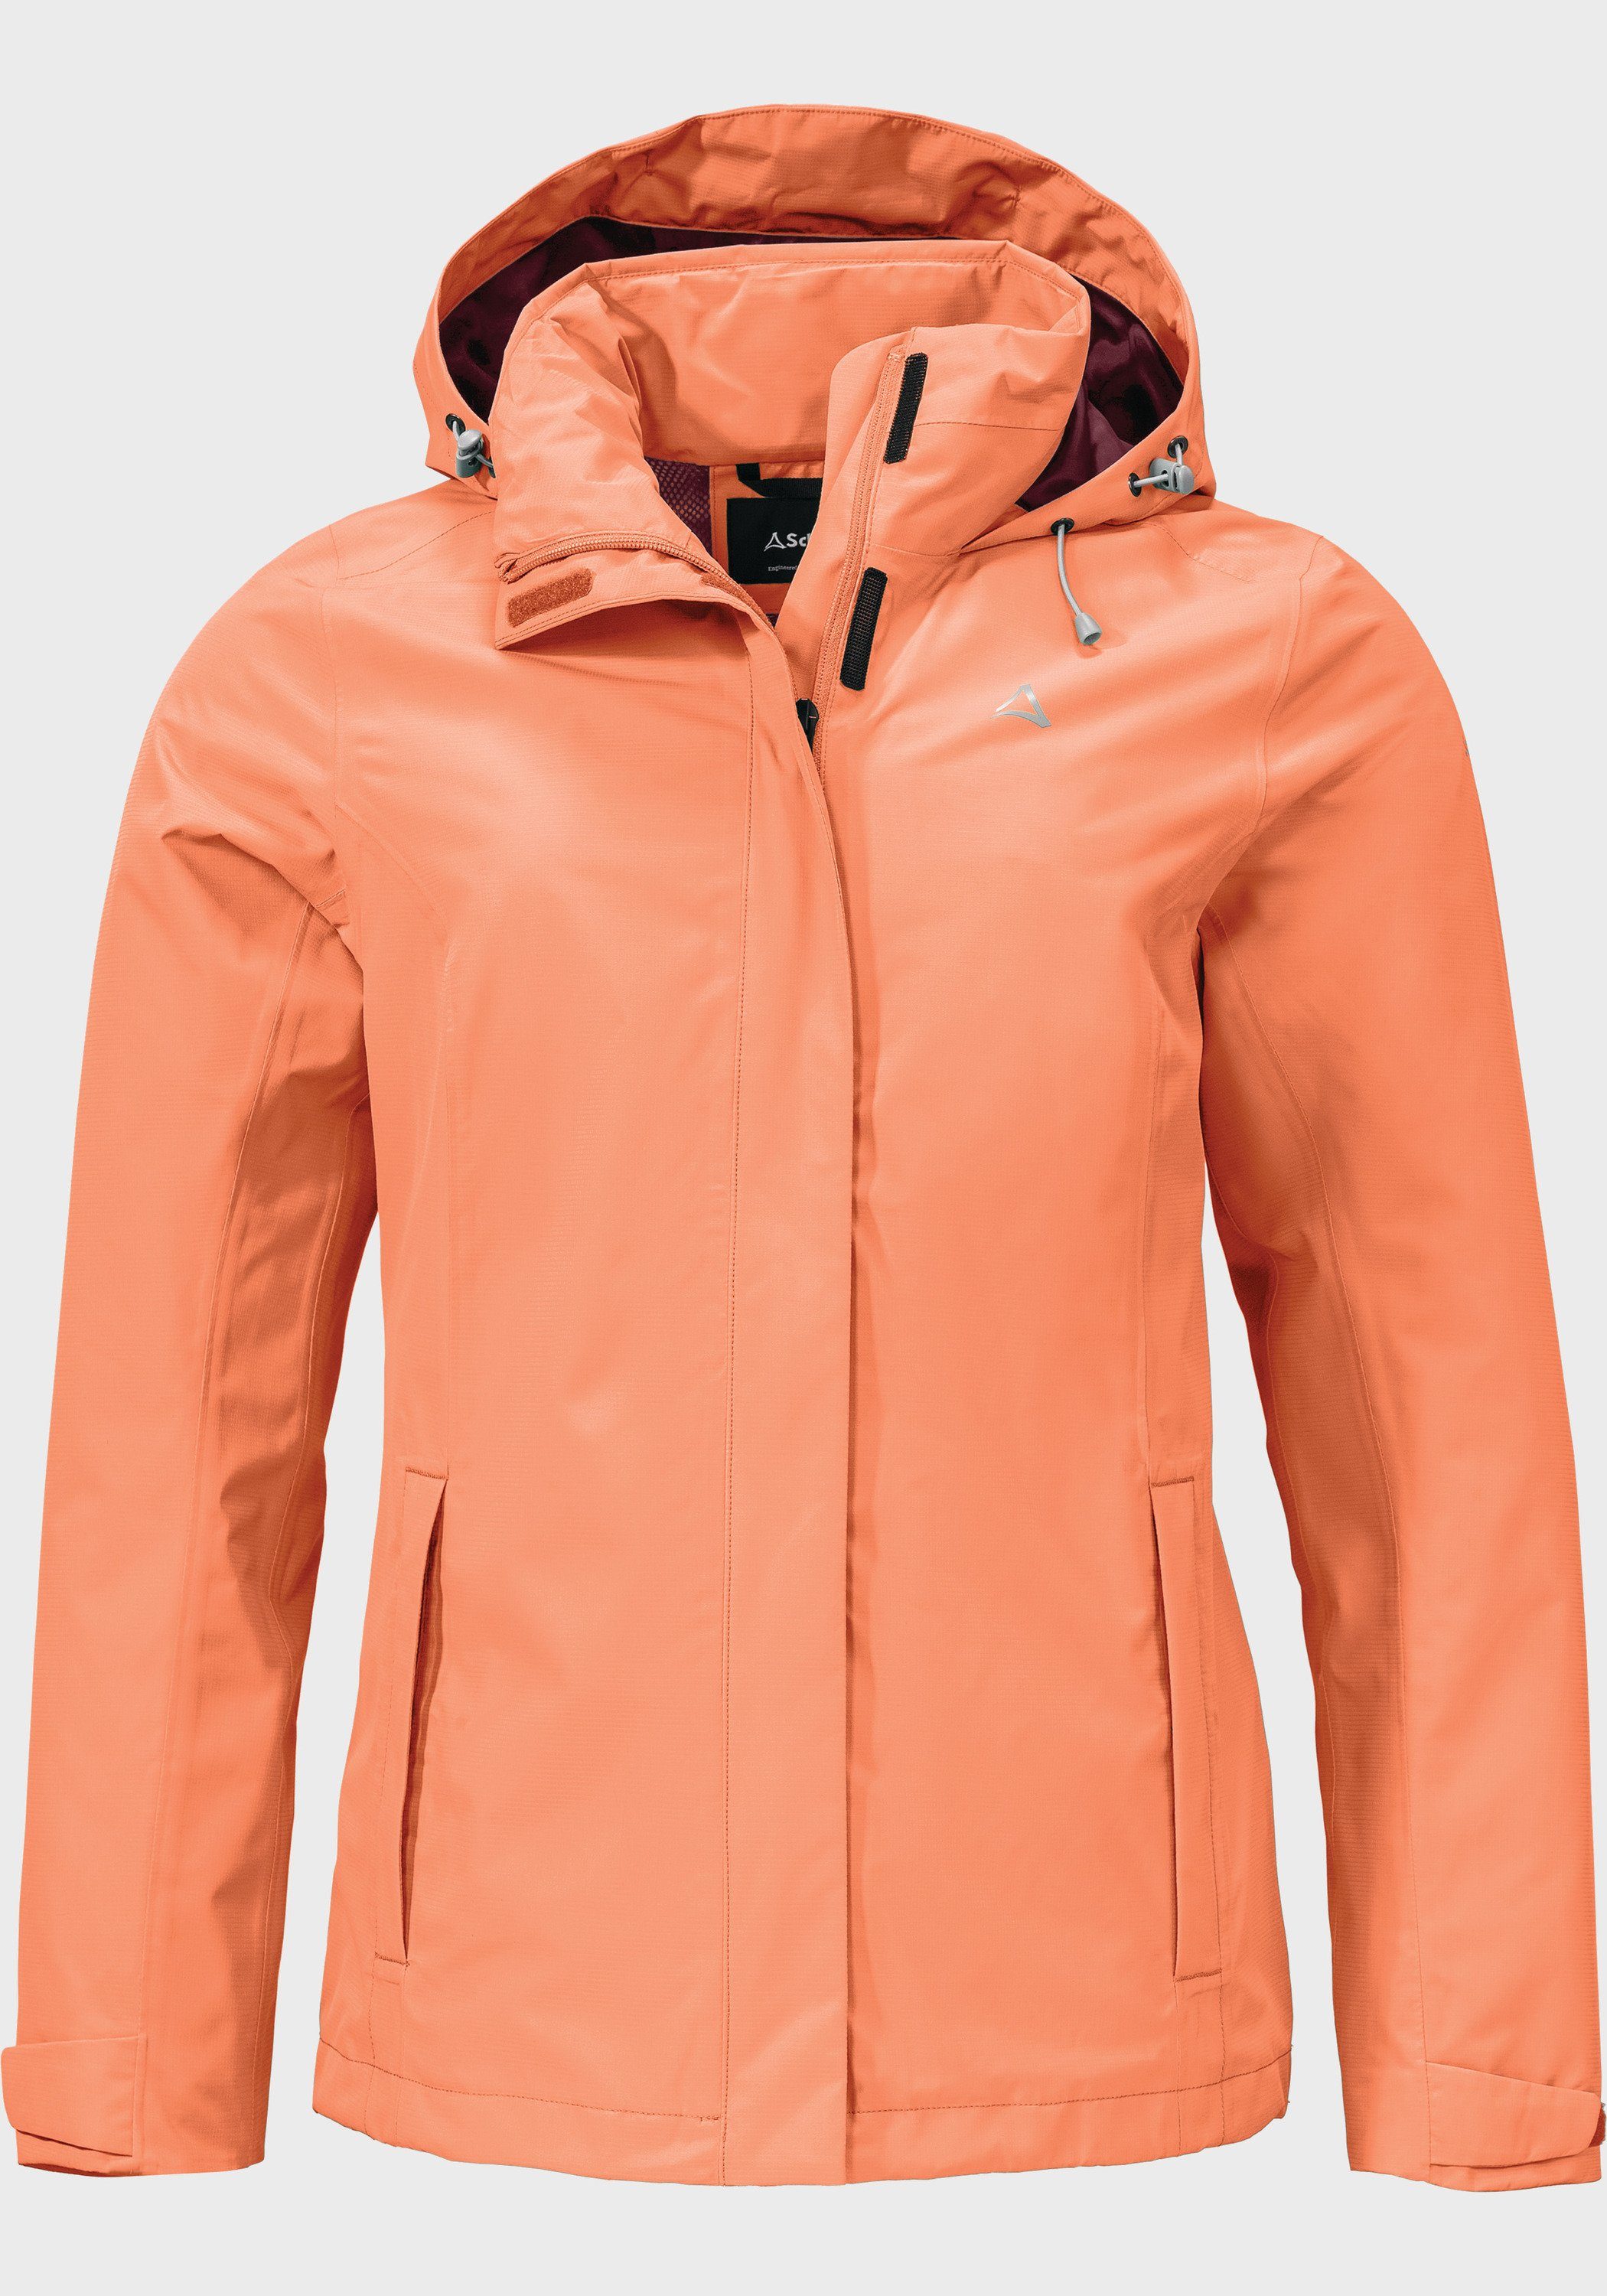 Schöffel Jacket L Outdoorjacke orange Gmund